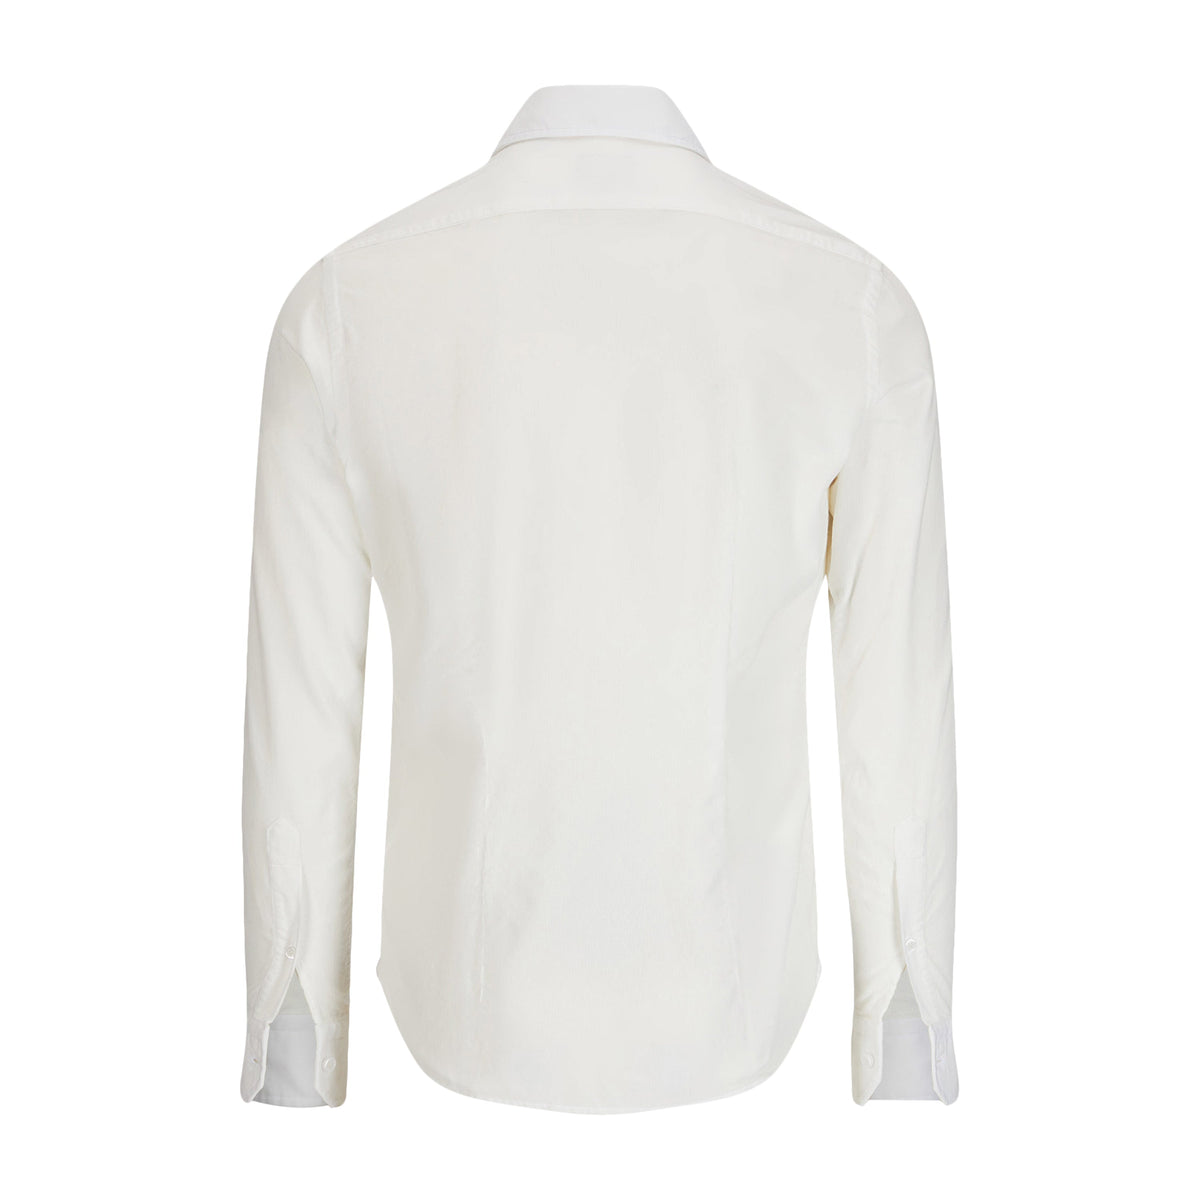 Orian Corduroy Shirt White-Skjorte-Orian-Phrase